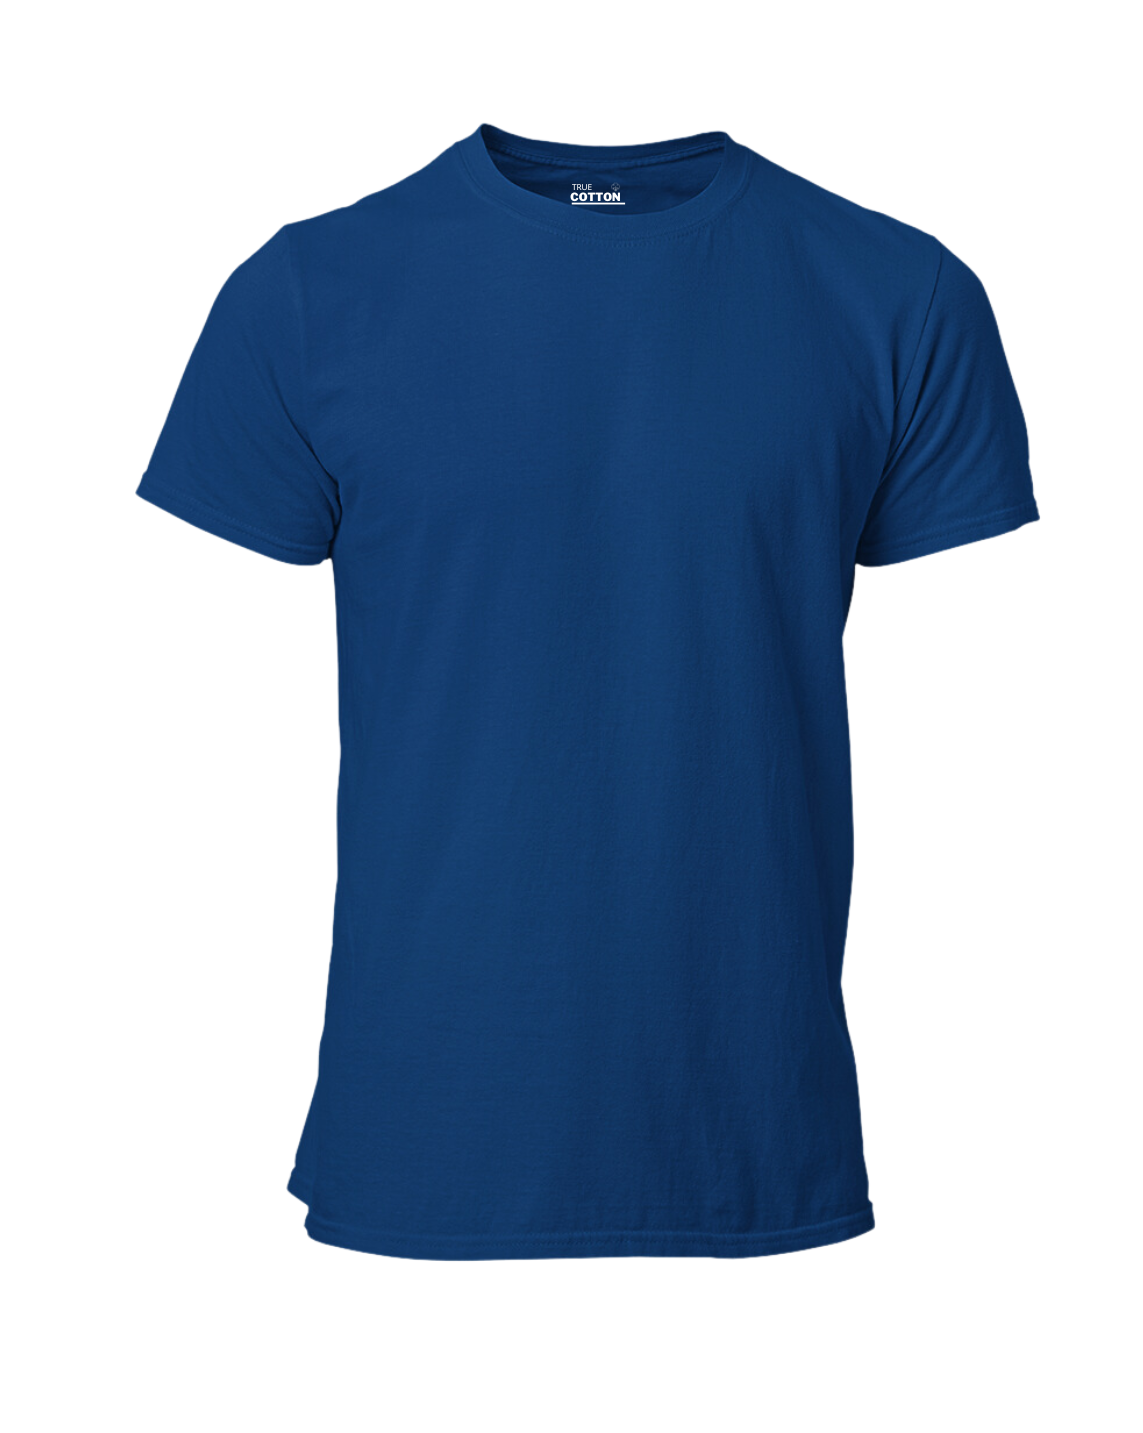 Men's 100% Cotton Premium Round Neck Tshirts - Navy